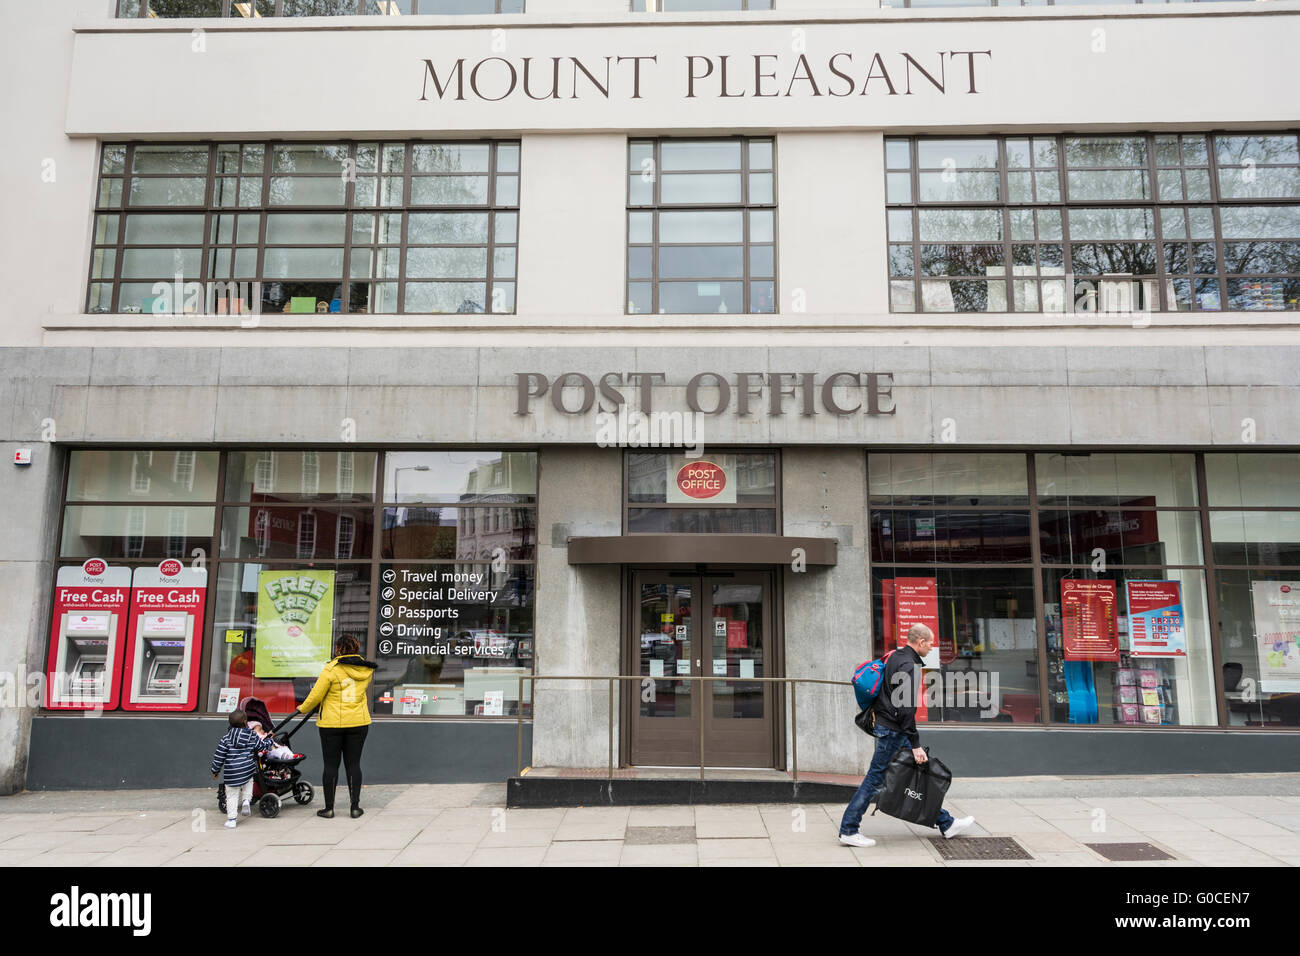 Vues extérieures de Mount Pleasant de tri, le Centre de courrier Central London Banque D'Images